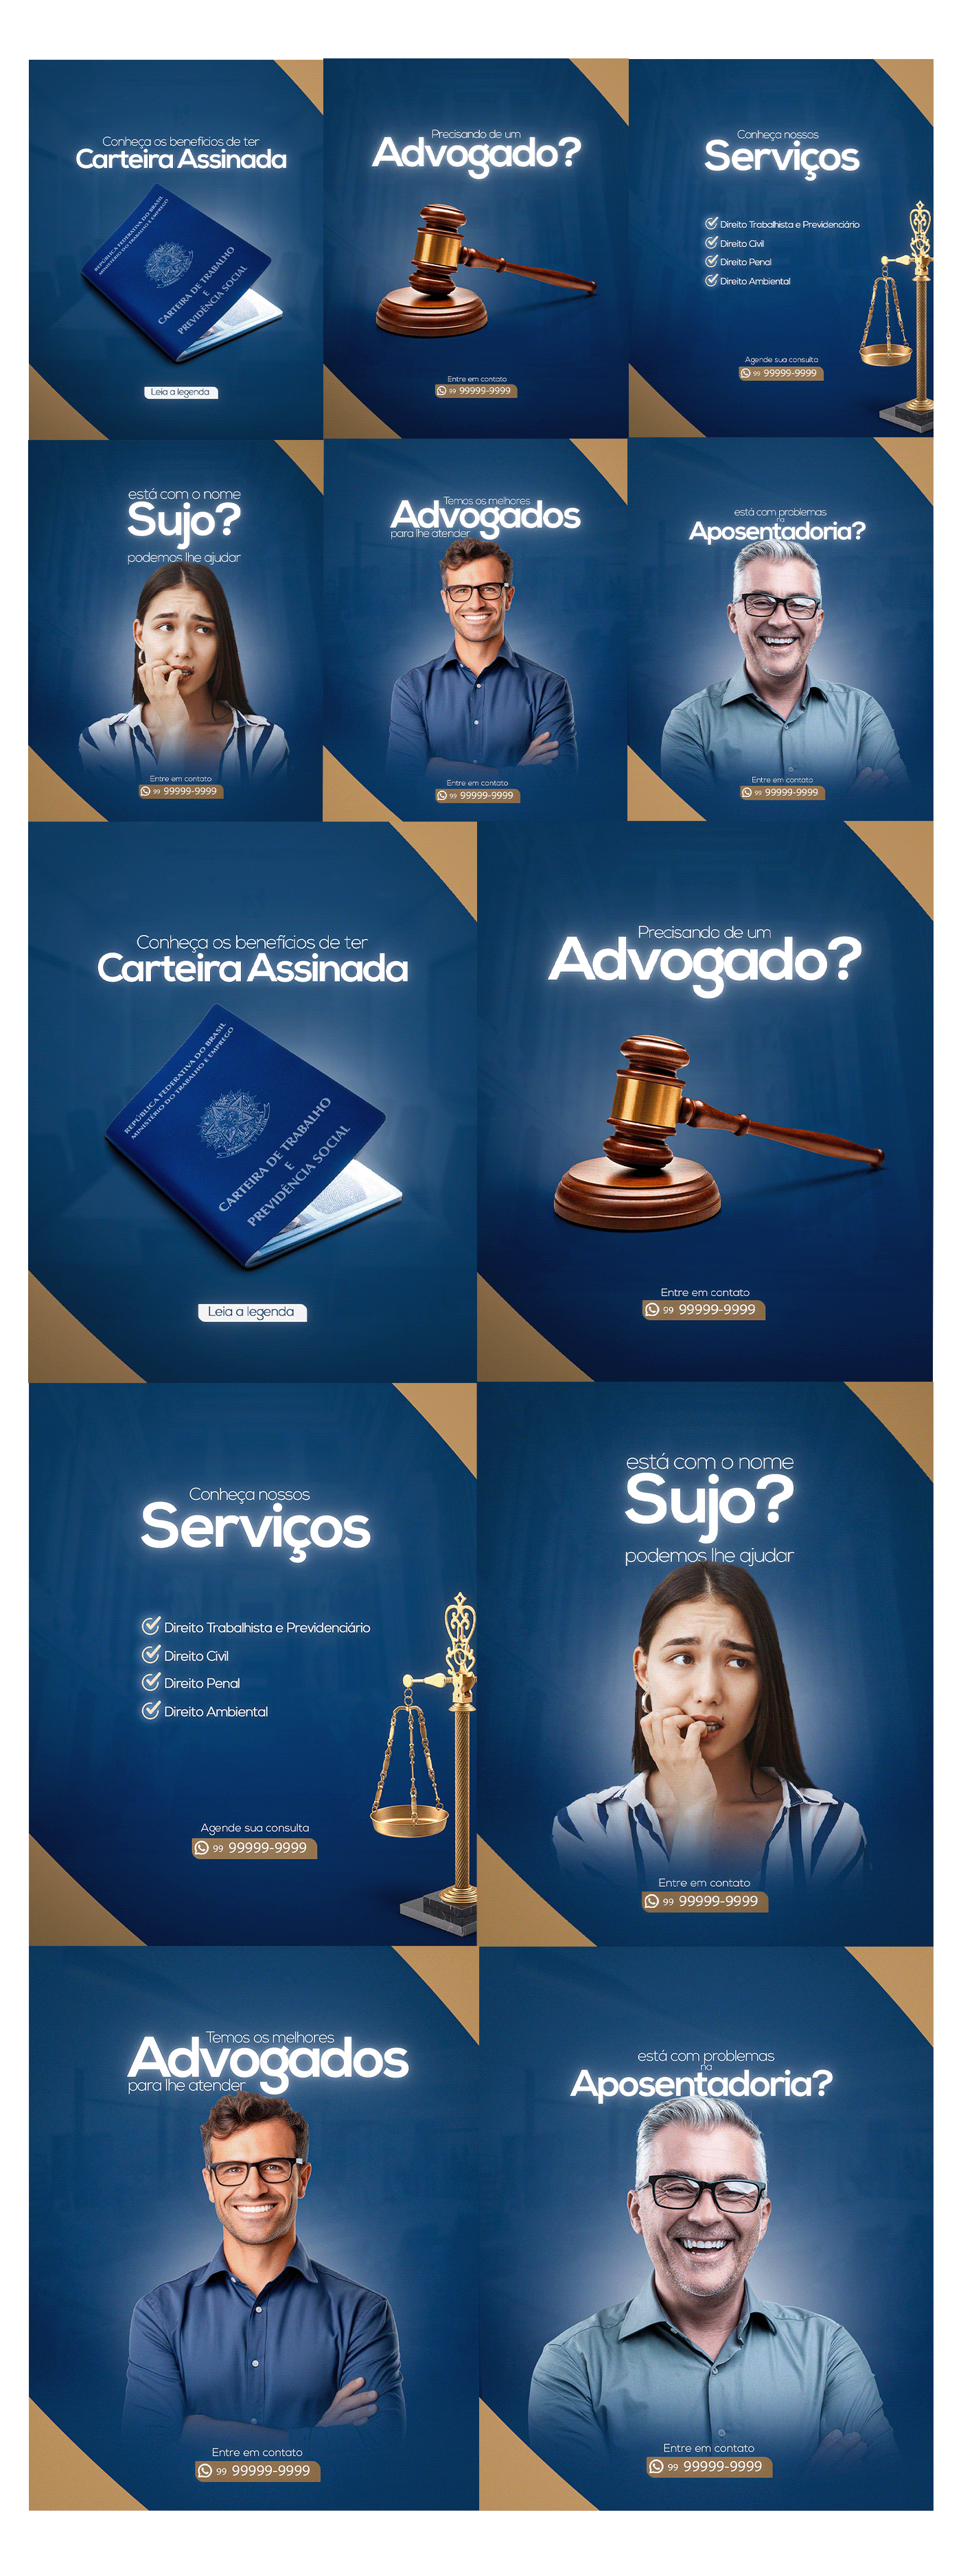 advogado direito advogada lawyer advocacia design Graphic Designer Social media post marketing   advogados